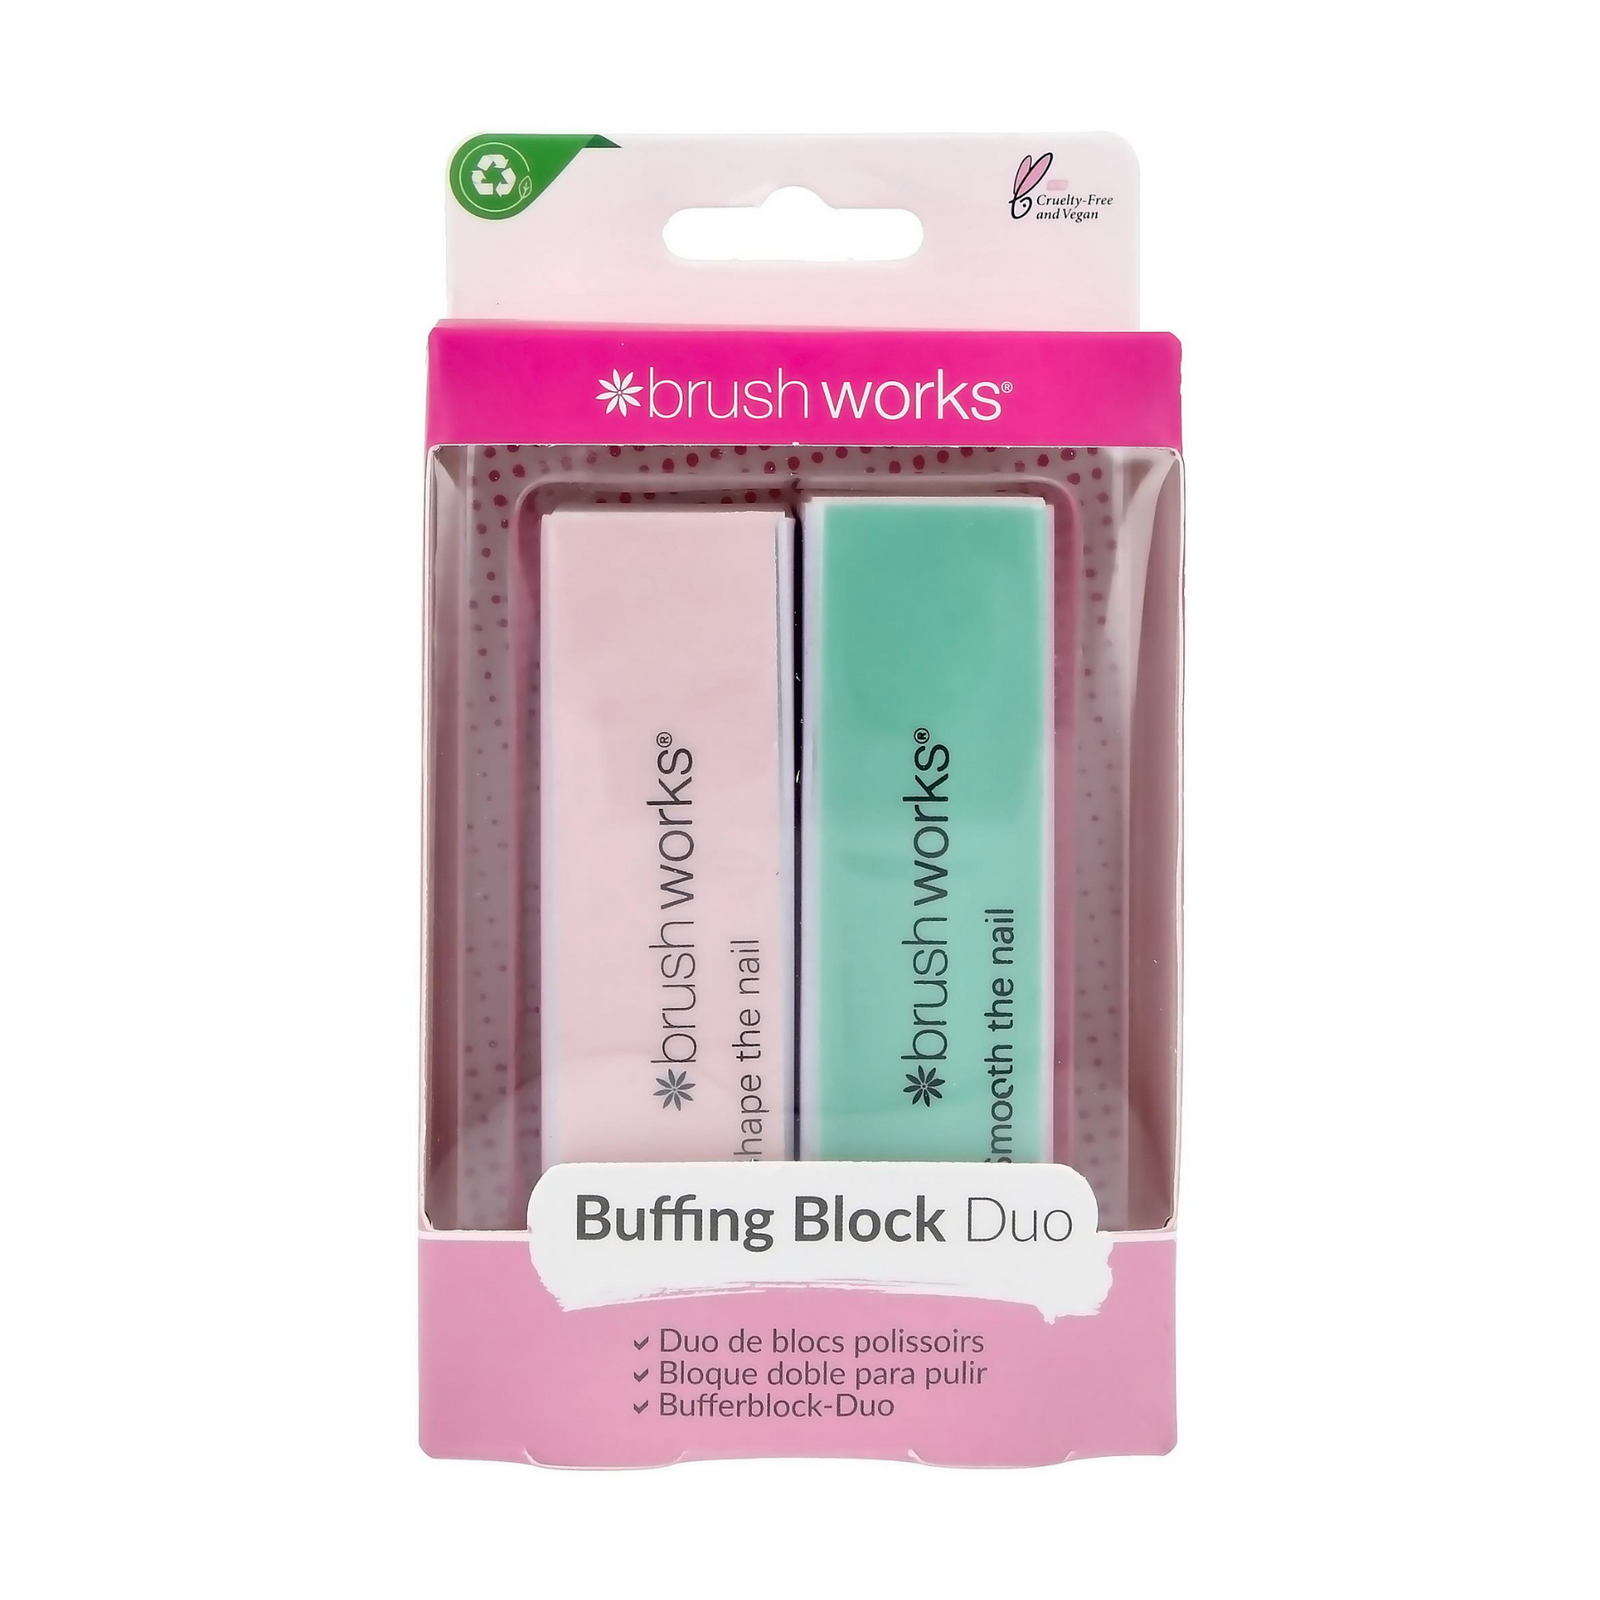 Buffing Block Duo